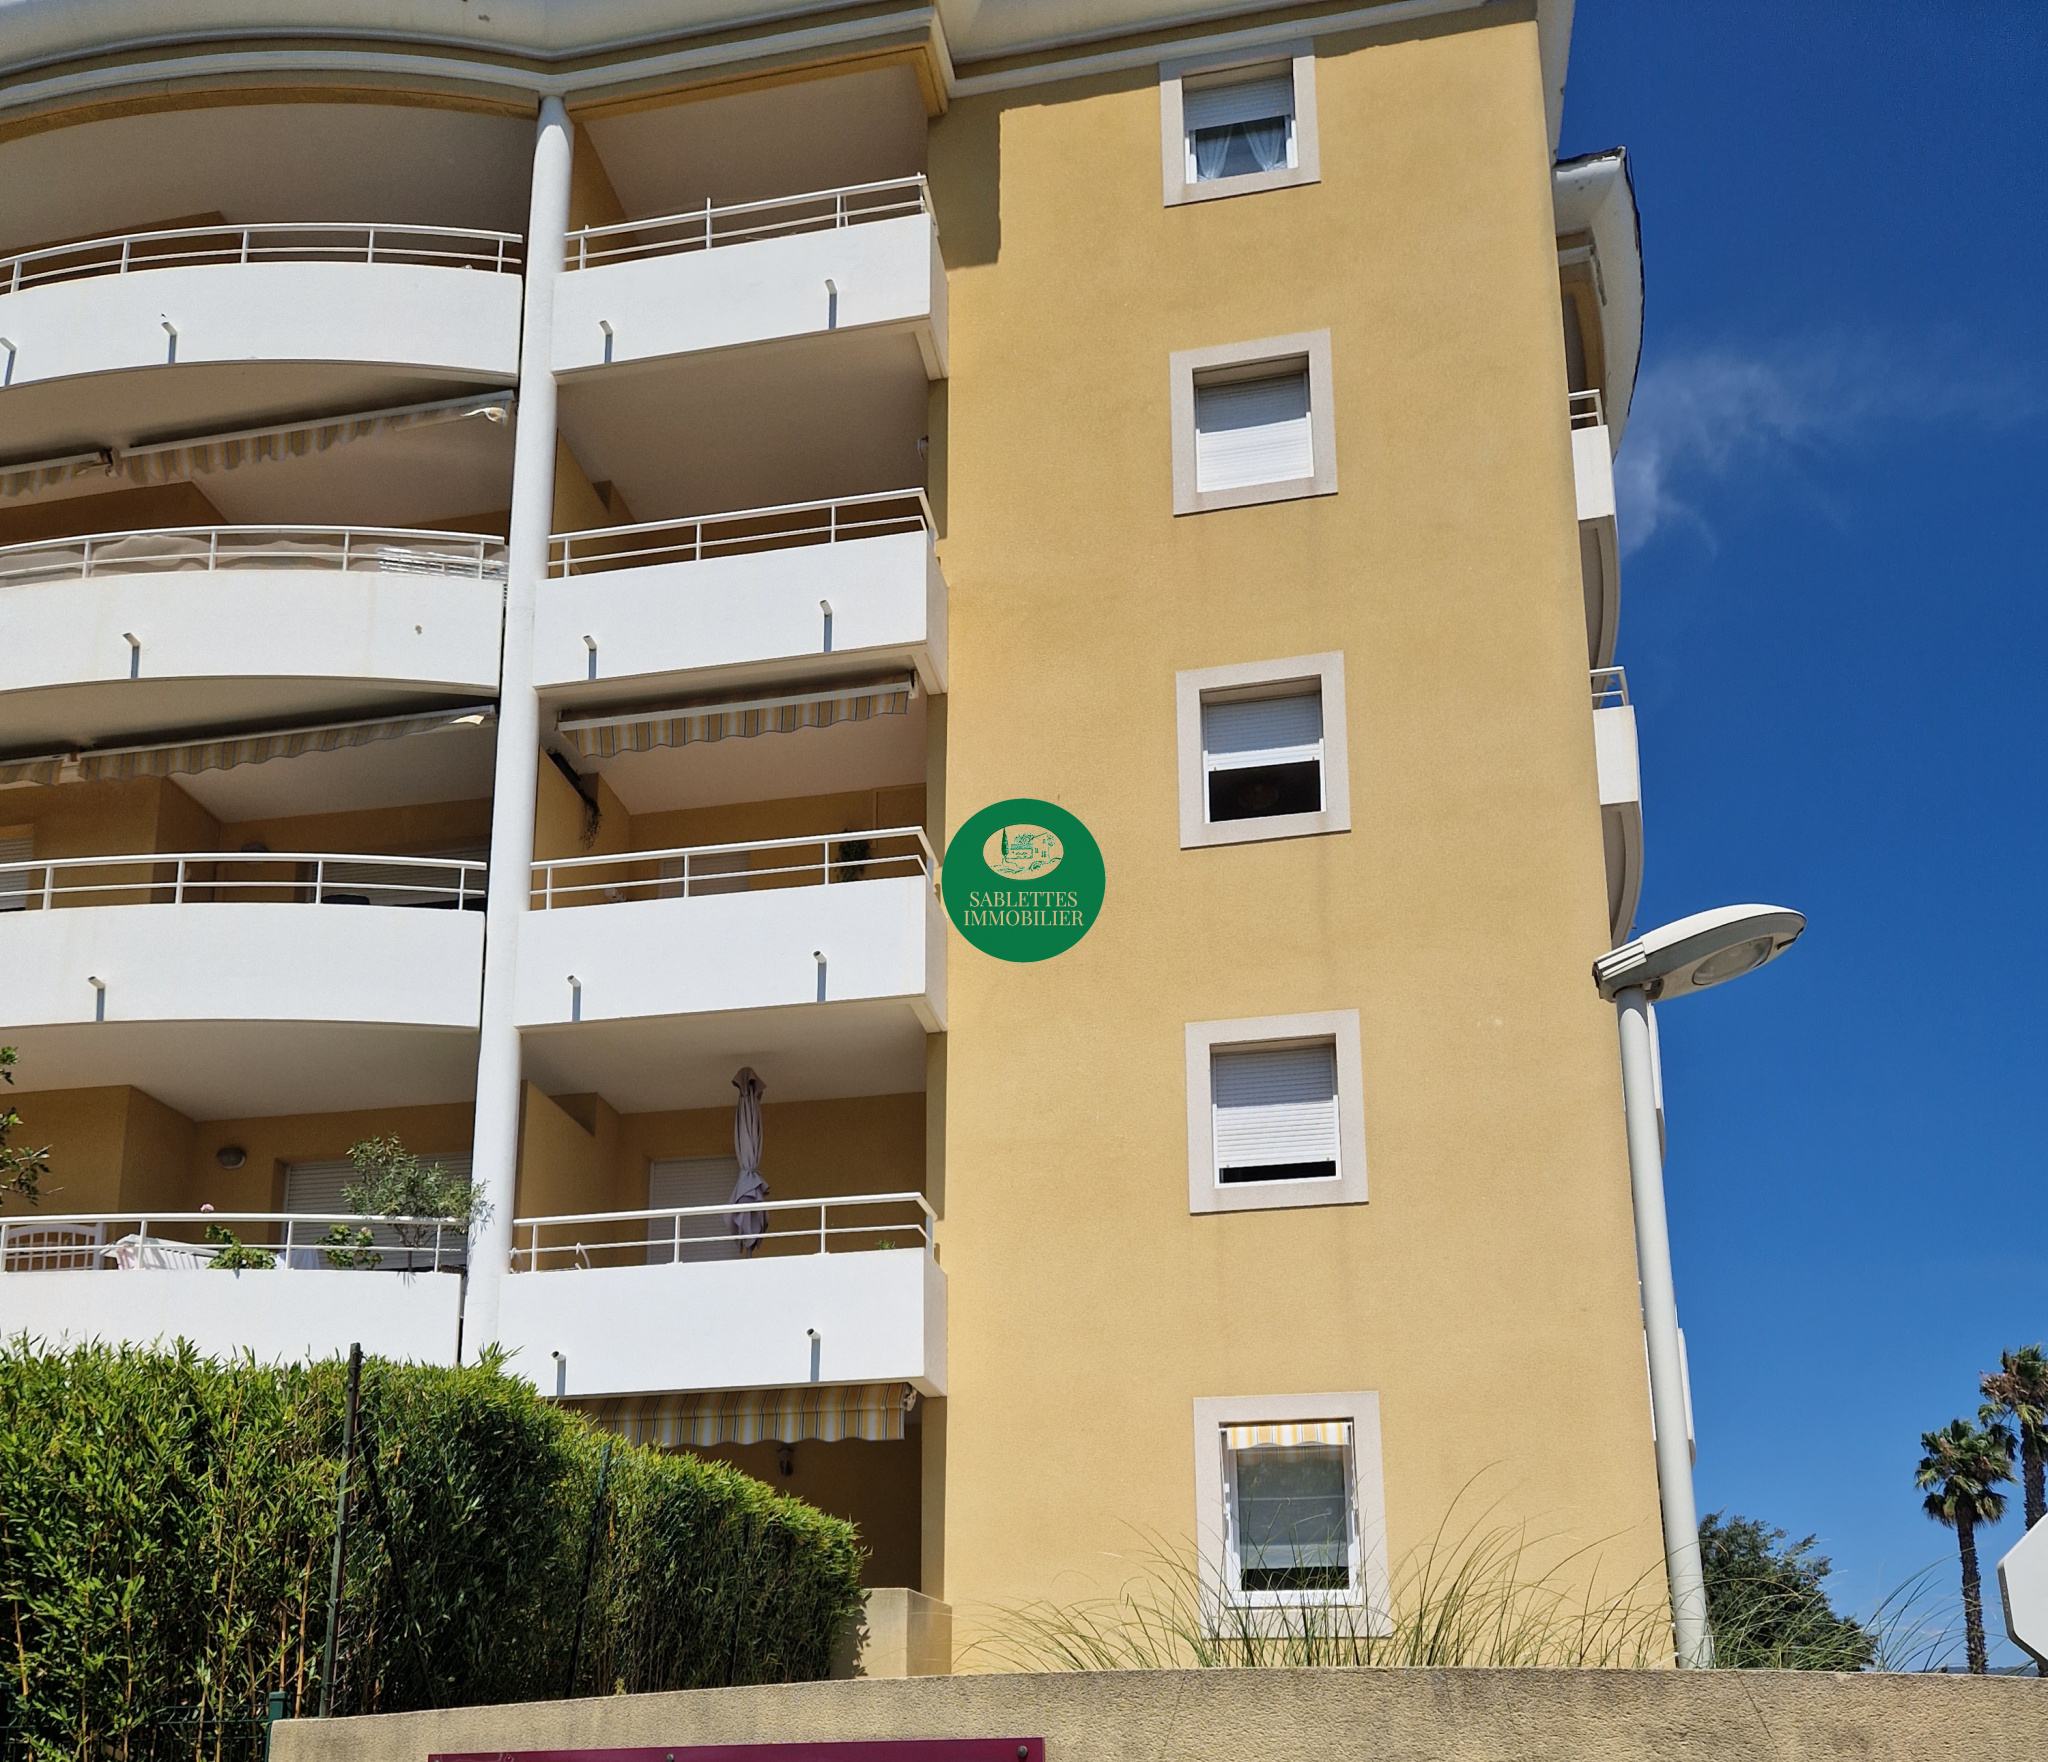 Vente Appartement 58m² 2 Pièces à La Seyne-sur-Mer (83500) - Sablettes Immobilier